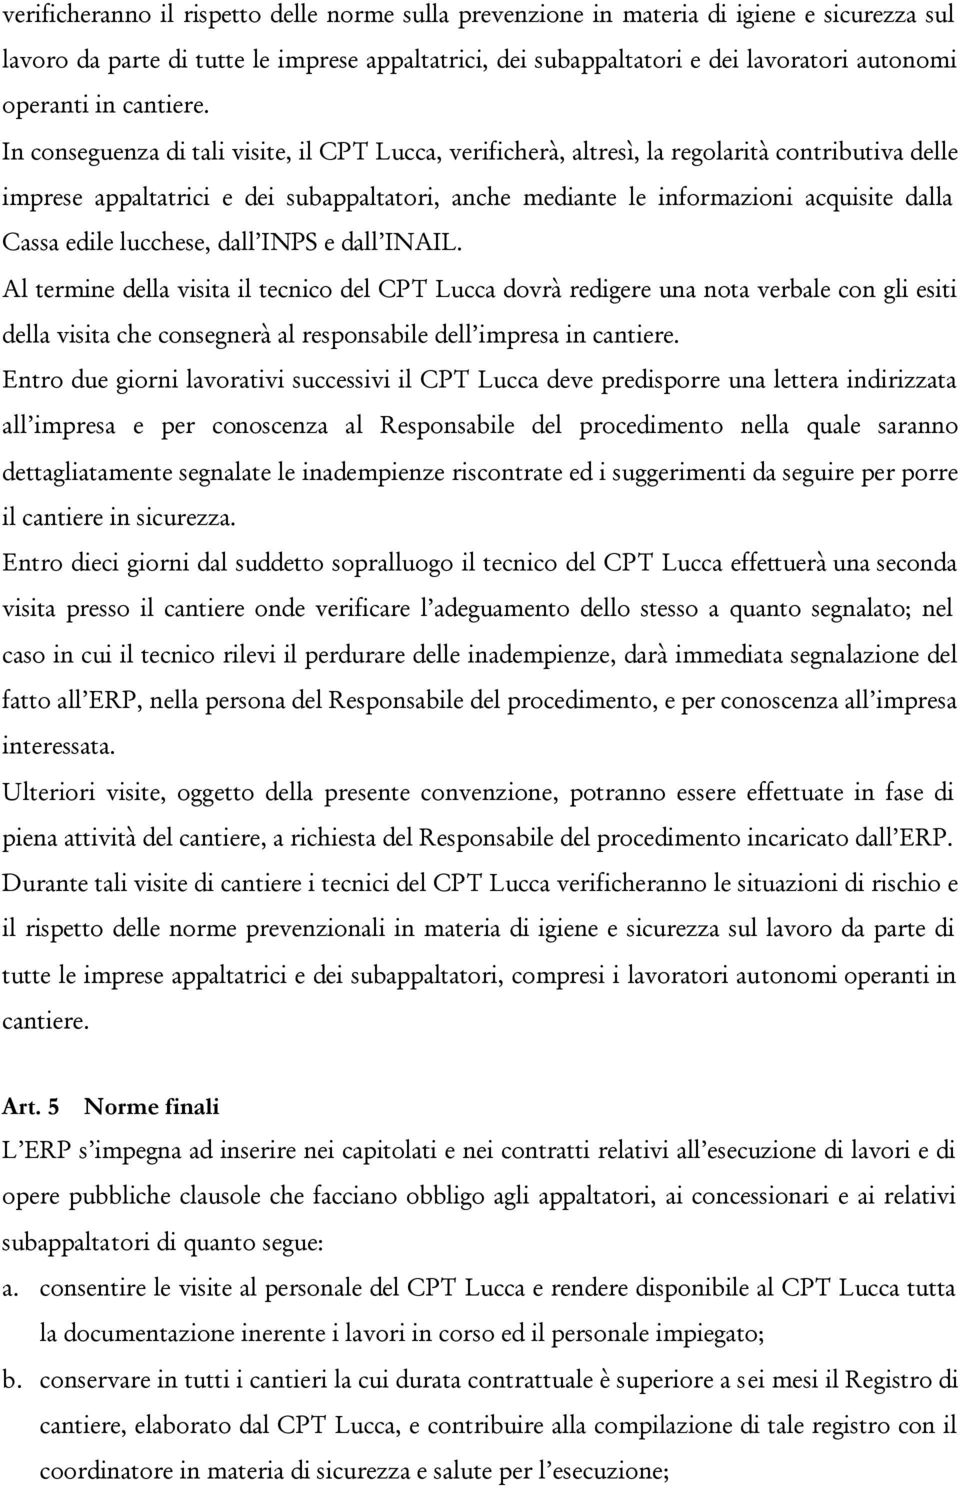 In conseguenza di tali visite, il CPT Lucca, verificherà, altresì, la regolarità contributiva delle imprese appaltatrici e dei subappaltatori, anche mediante le informazioni acquisite dalla Cassa